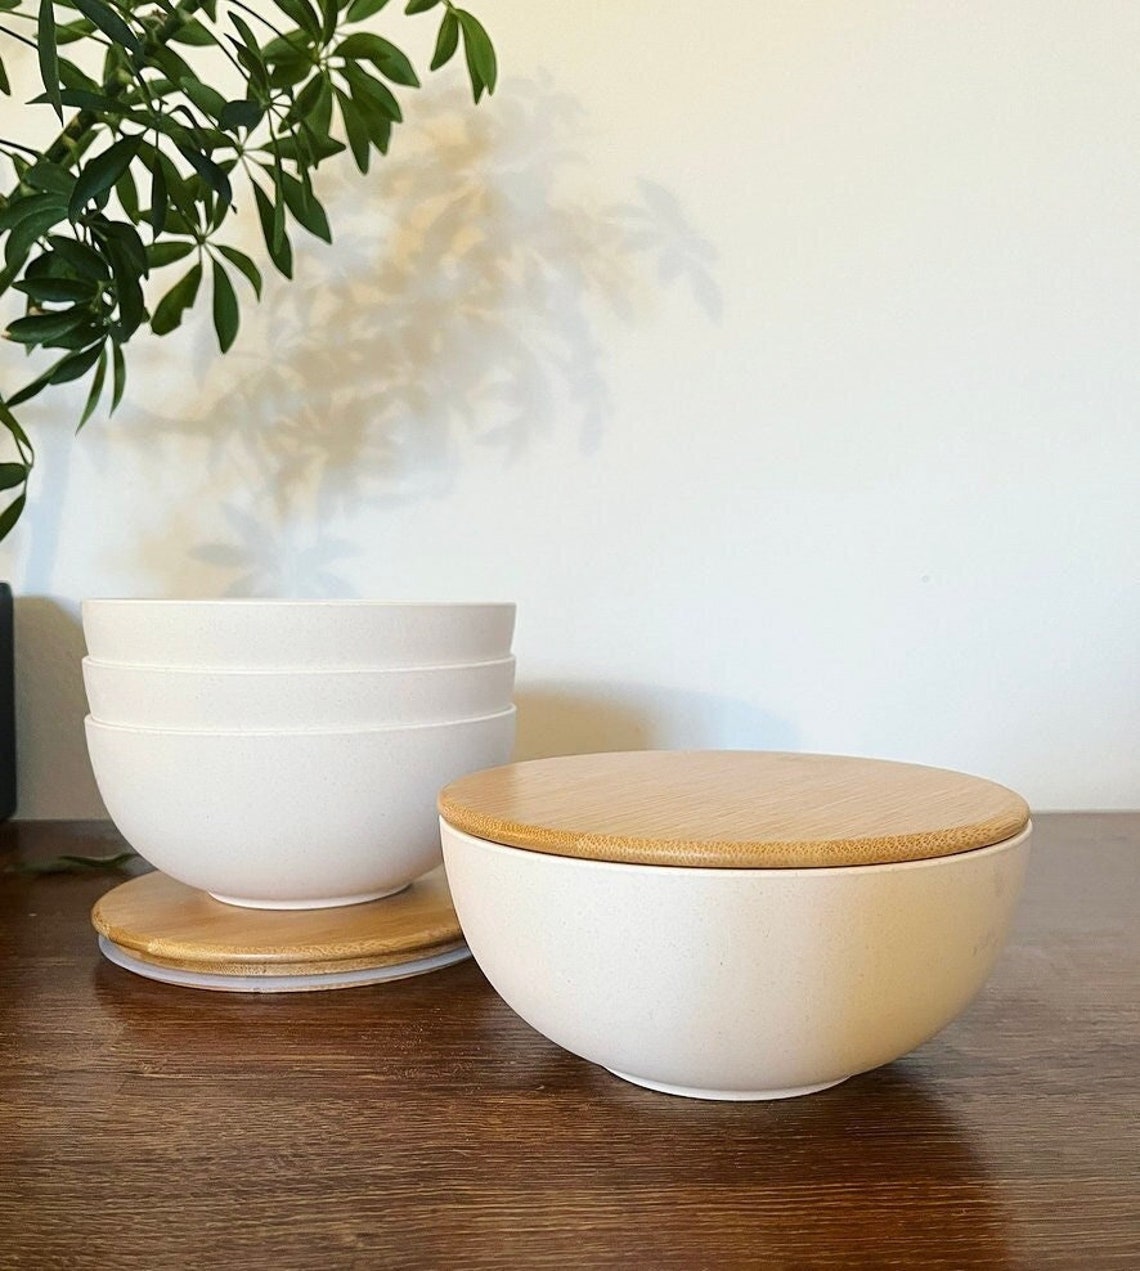 bamboo-kitchenware-husk-bowls-4-bowls